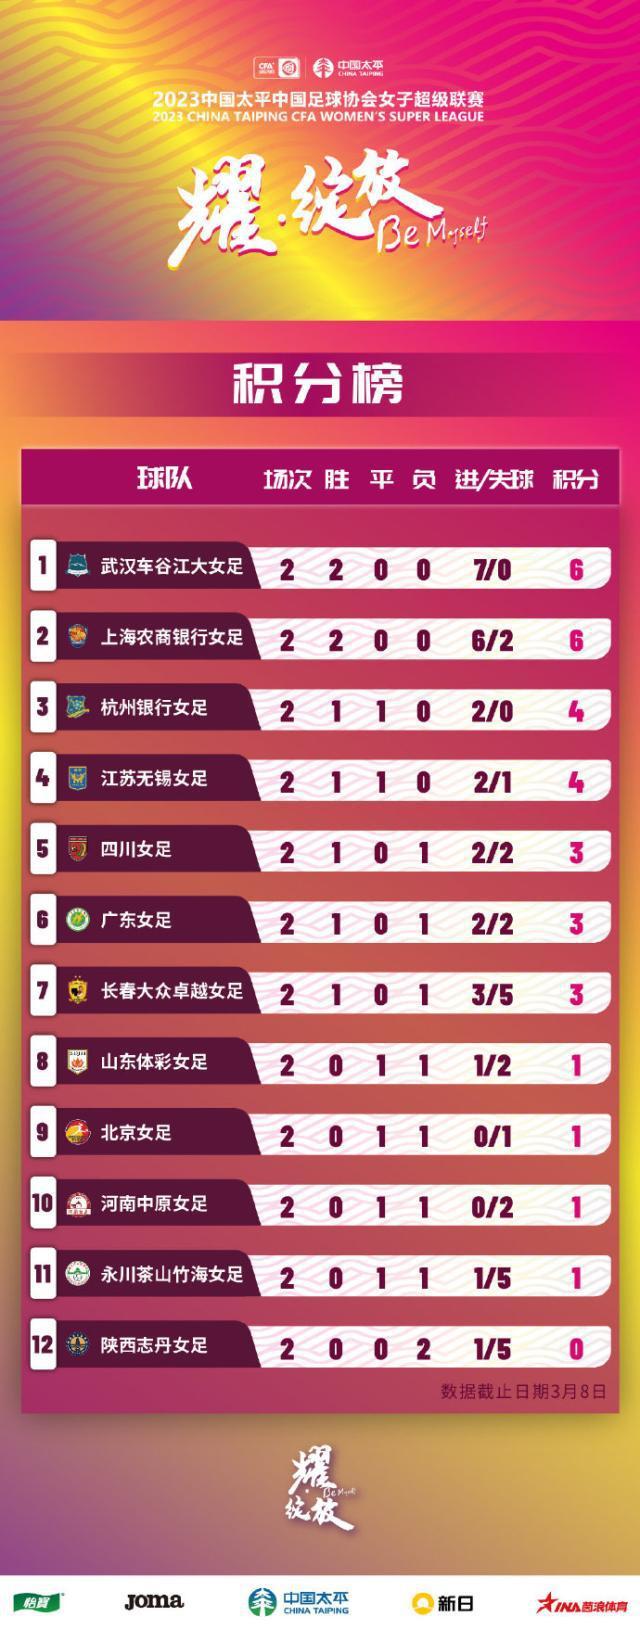 【女超第2轮综述】武汉上海2连胜 陕西志丹连败垫底